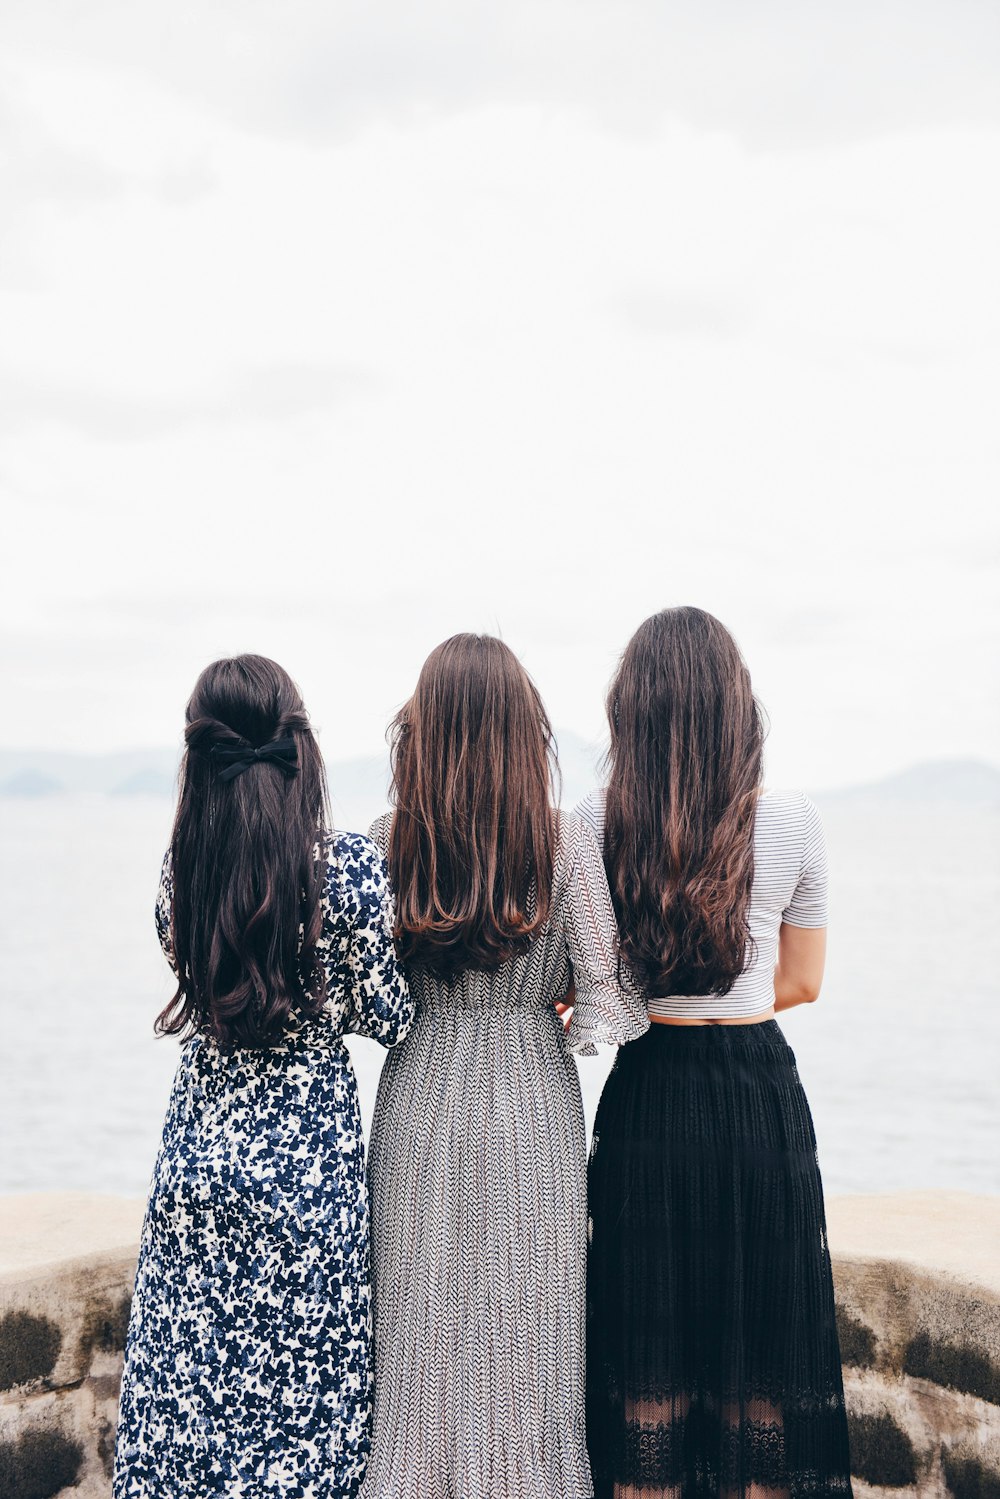 tre donne che guardano indietro e di fronte allo specchio d'acqua